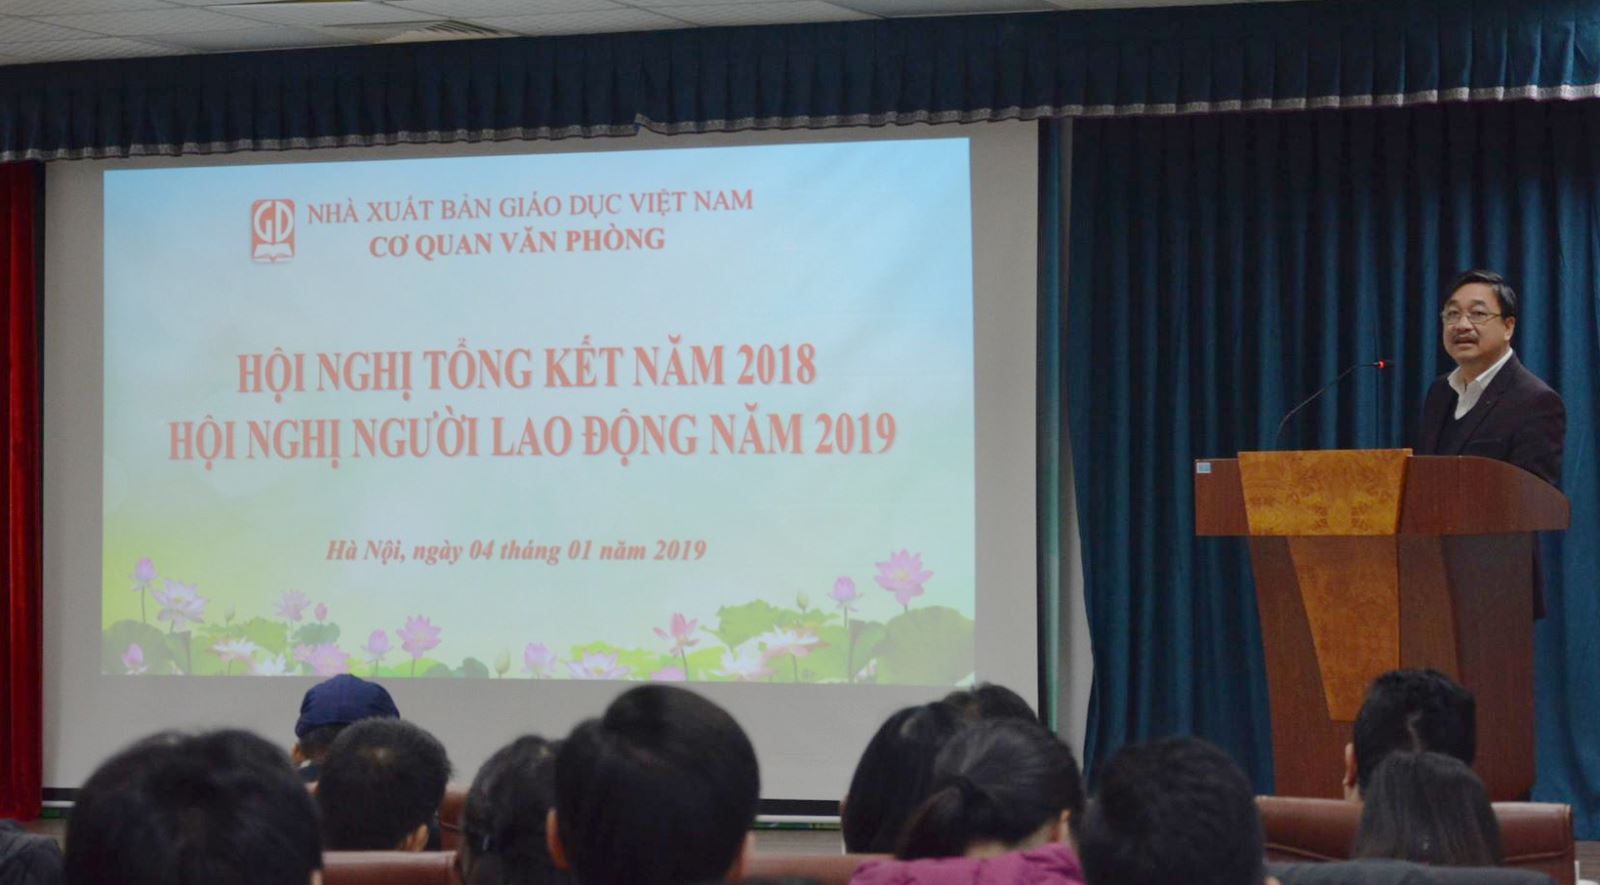 Hội nghị tổng kết công tác 2018 và Hội nghị người lao động Cơ quan Văn phòng NXB Giáo dục Việt Nam năm 2019